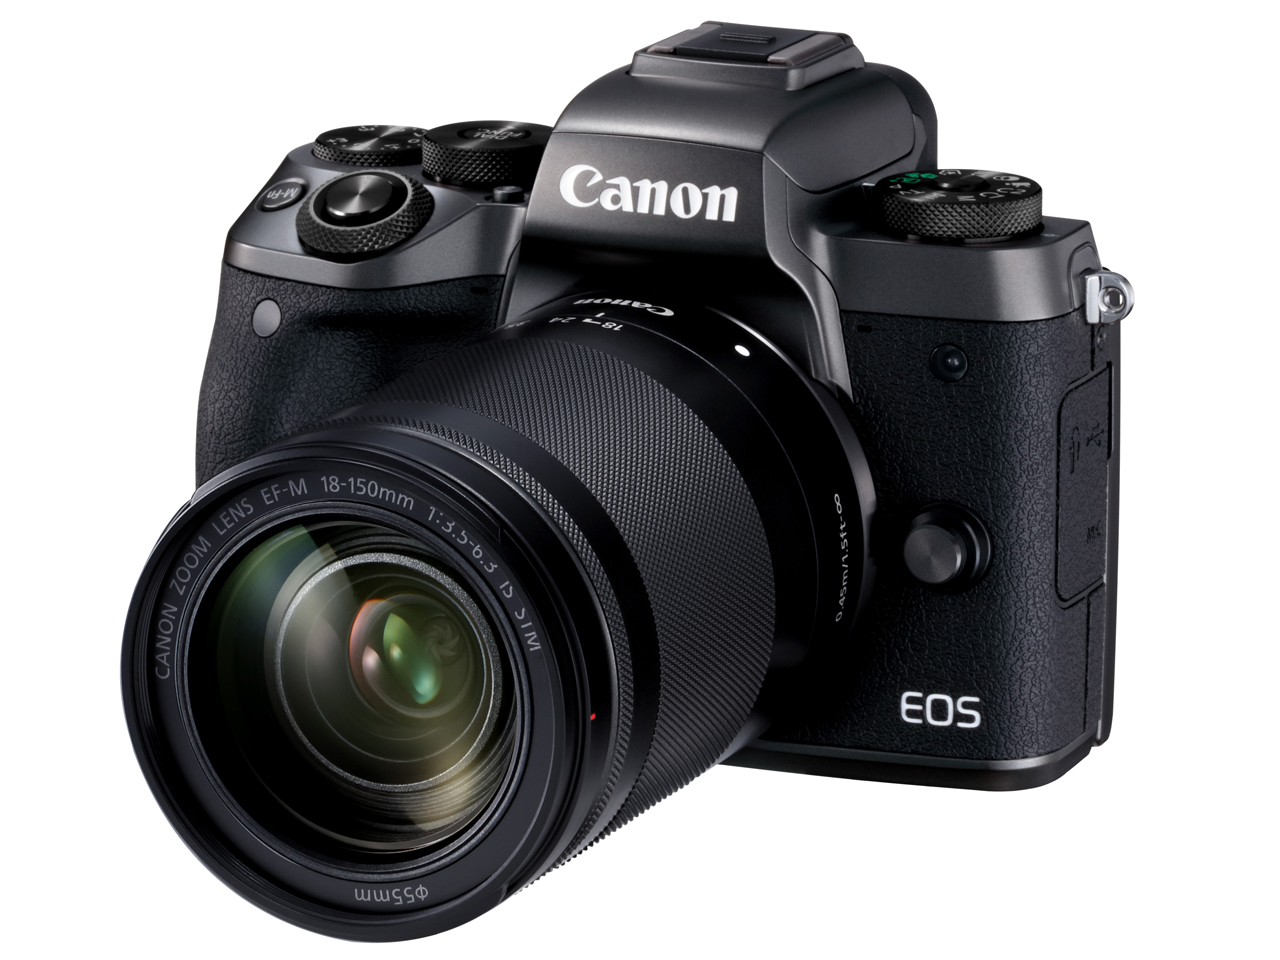 価格.com - EOS M5 EF-M18-150 IS STM レンズキット の製品画像